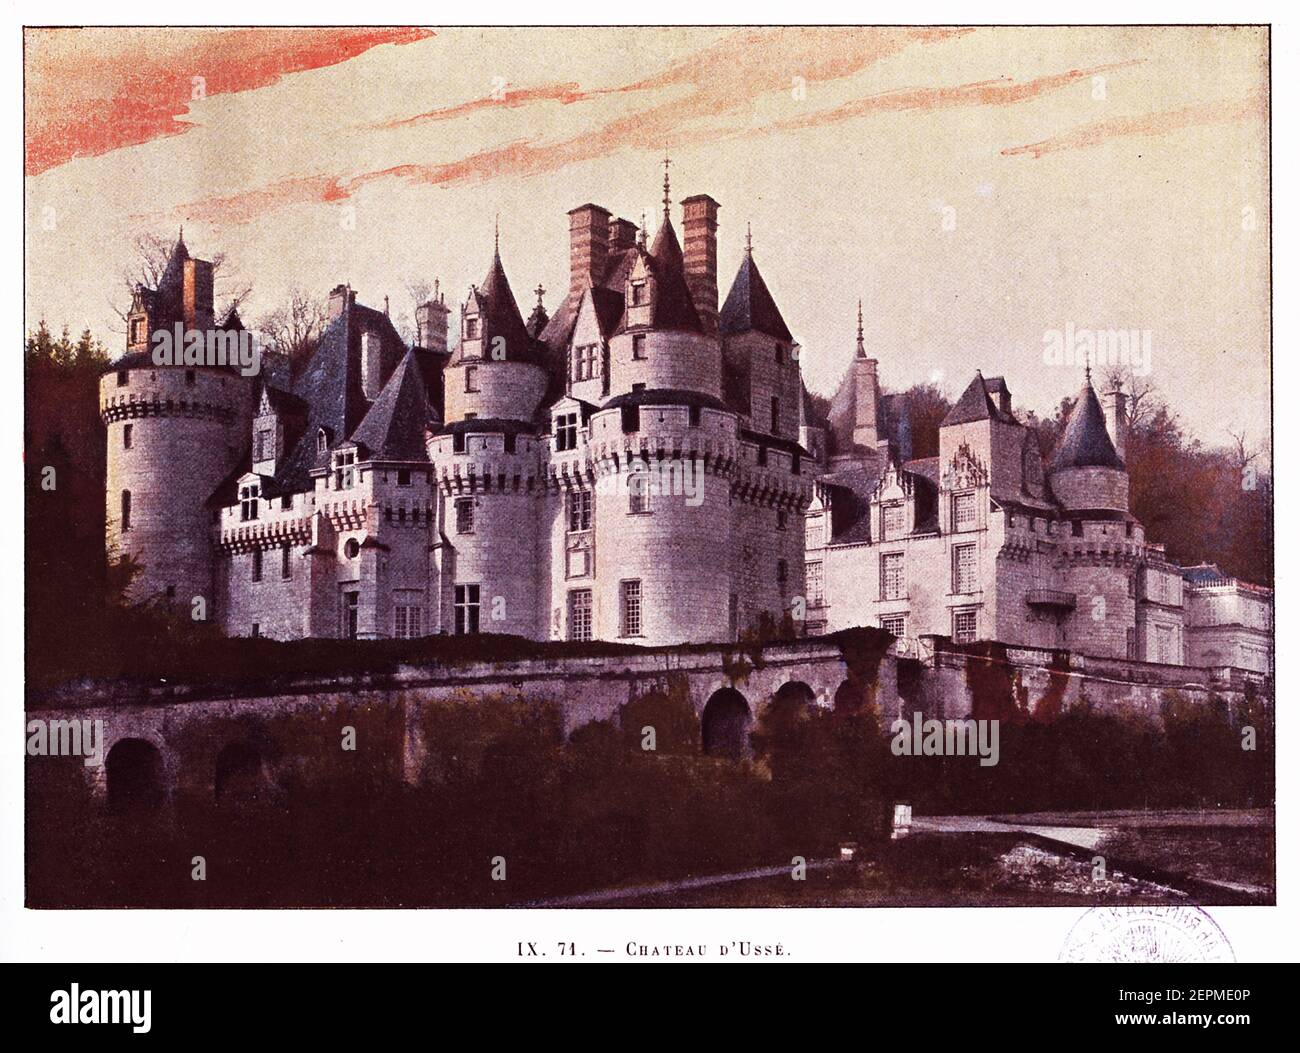 Chateau d'Usse - Photochrome print after a photograph by M.Freuler. Published in La France - Aquarelles et Souvenirs de Voyages by Sanard et Derangeon Stock Photo